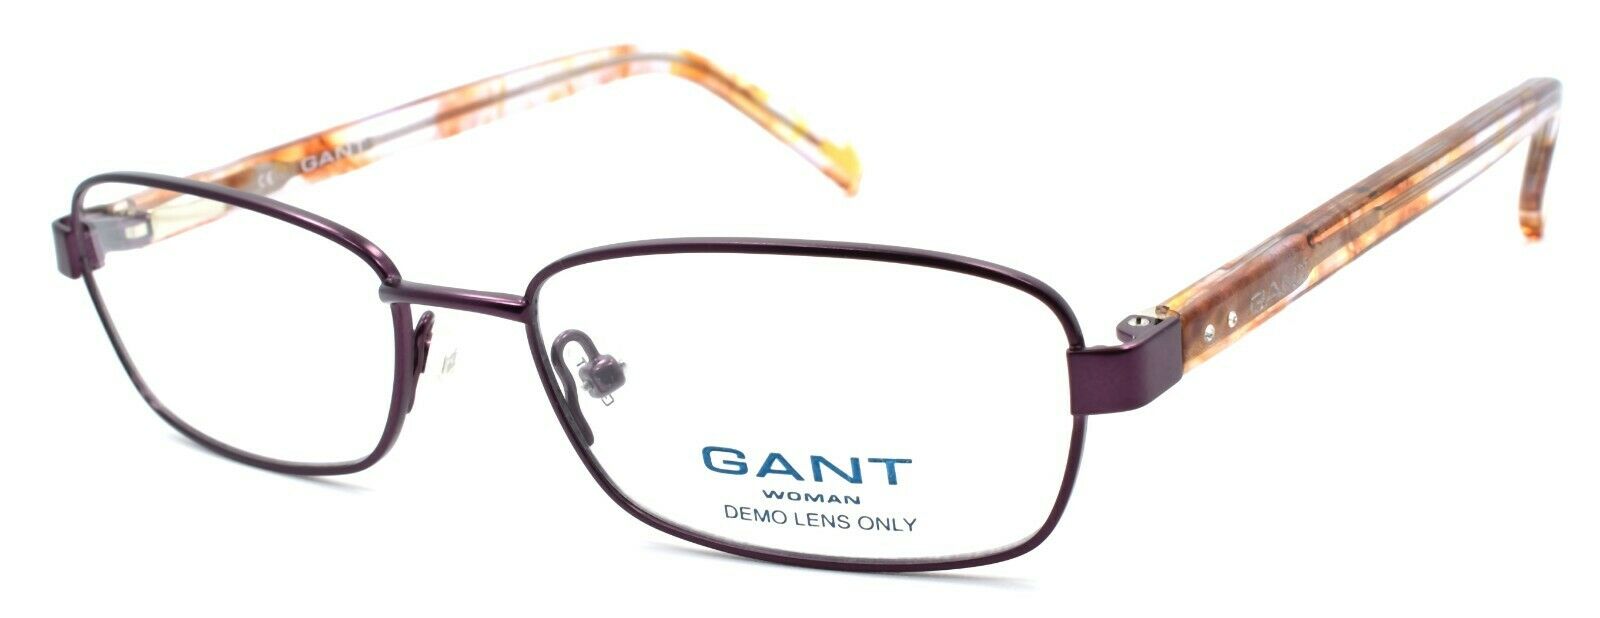 1-GANT GW Sierra SPUR Women's Eyeglasses Frames 51-16-135 Satin Purple-715583395343-IKSpecs